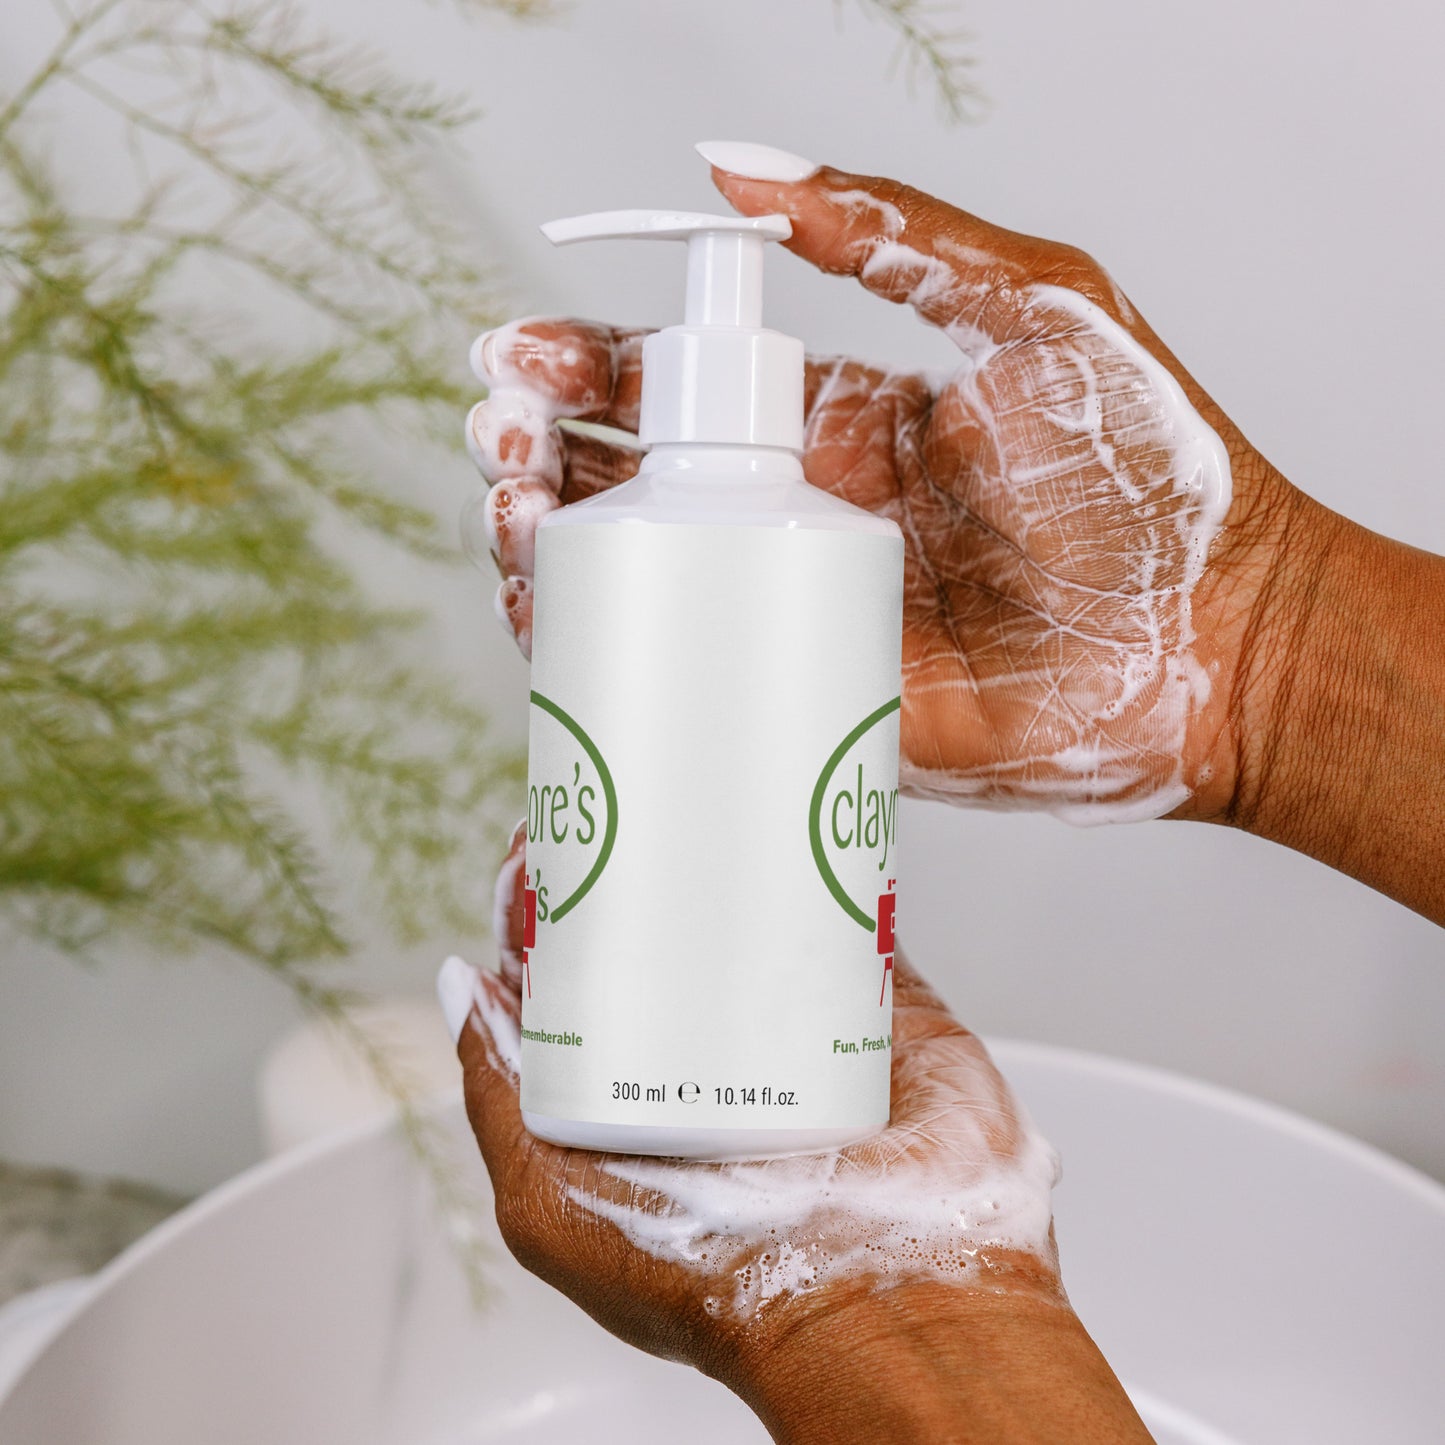 claymore’s Refreshing hand & body wash